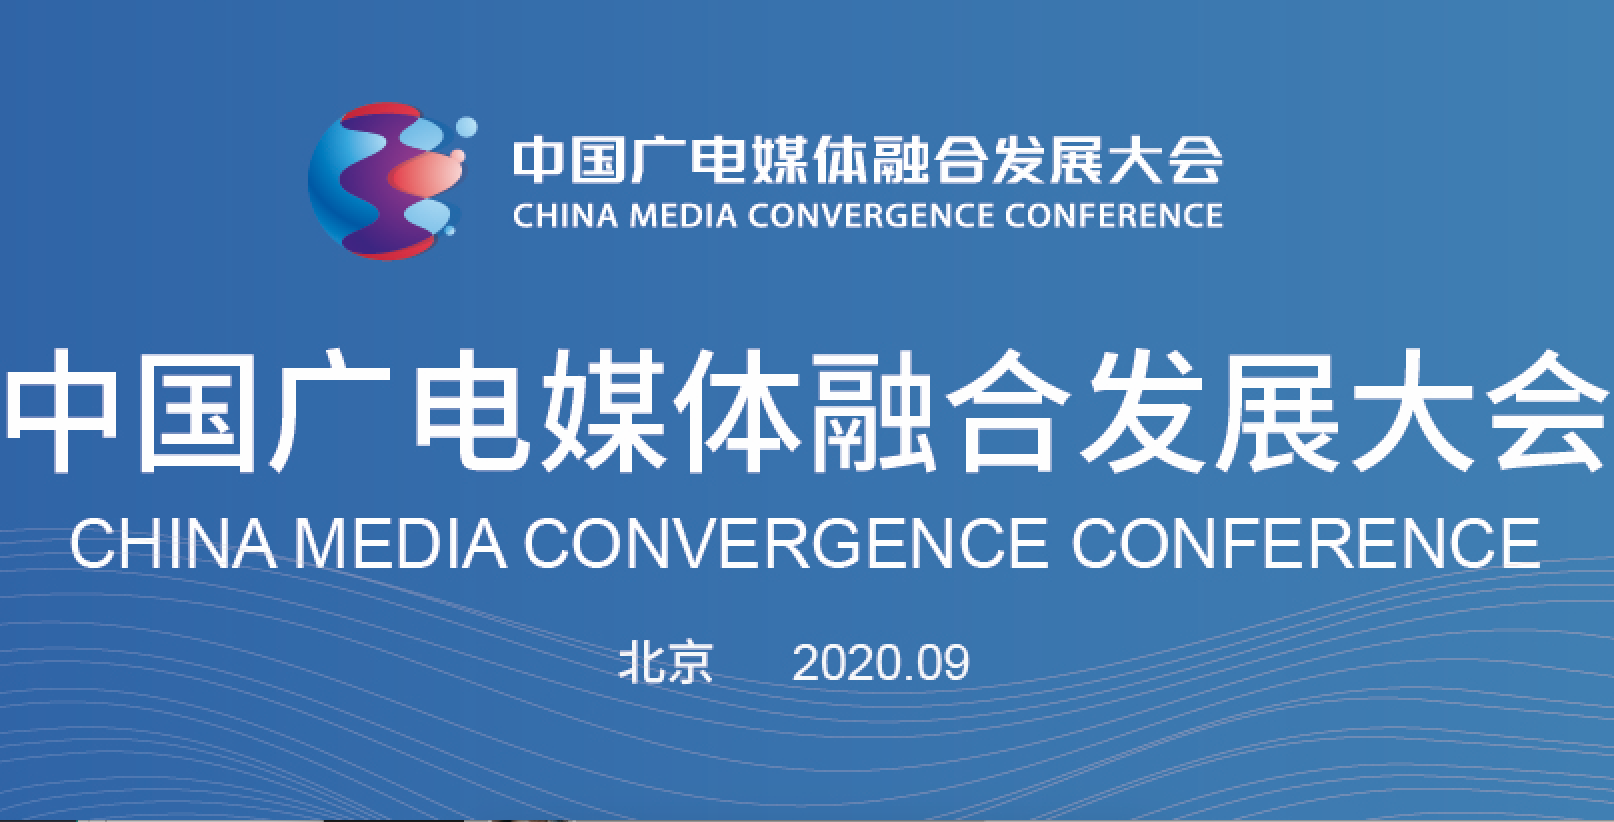 共融·共生·共美好 中国广电媒体融合发展大会将在京举办